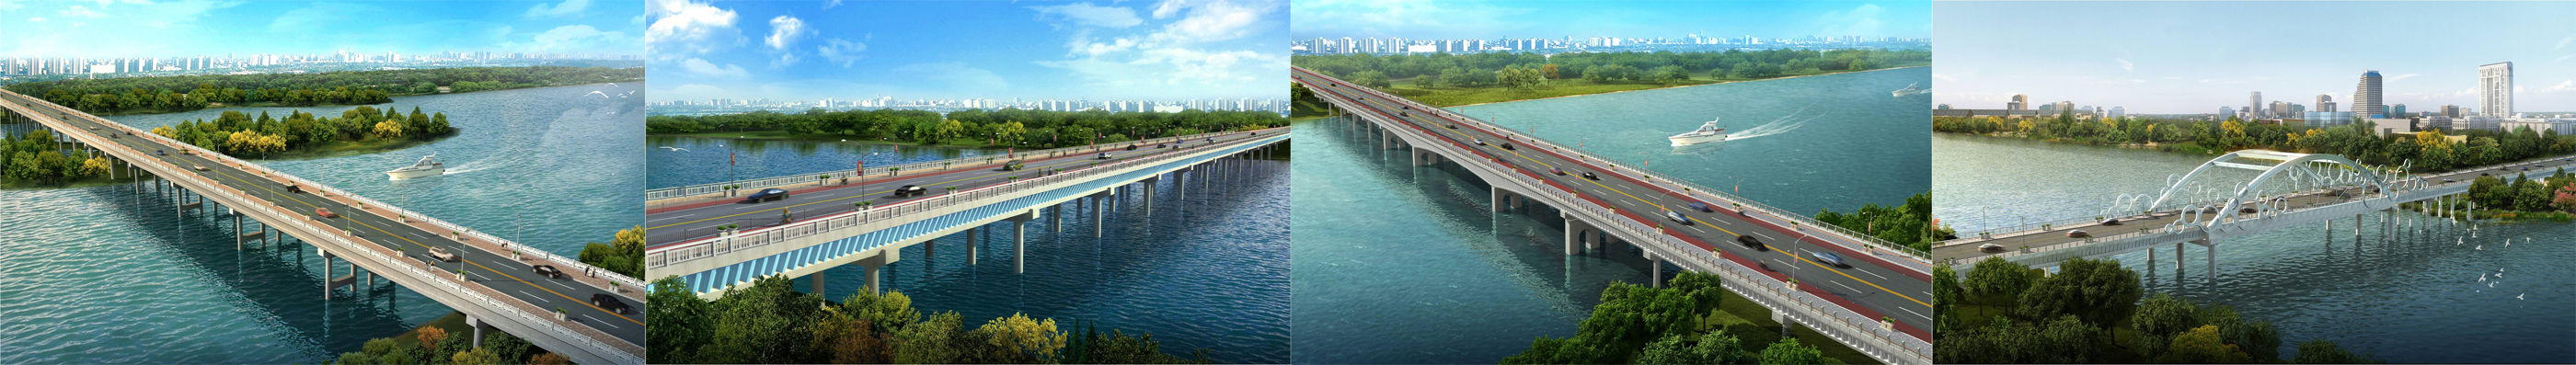 福建漳州市华安经济开发区龙浦大桥撤渡改桥建设工程